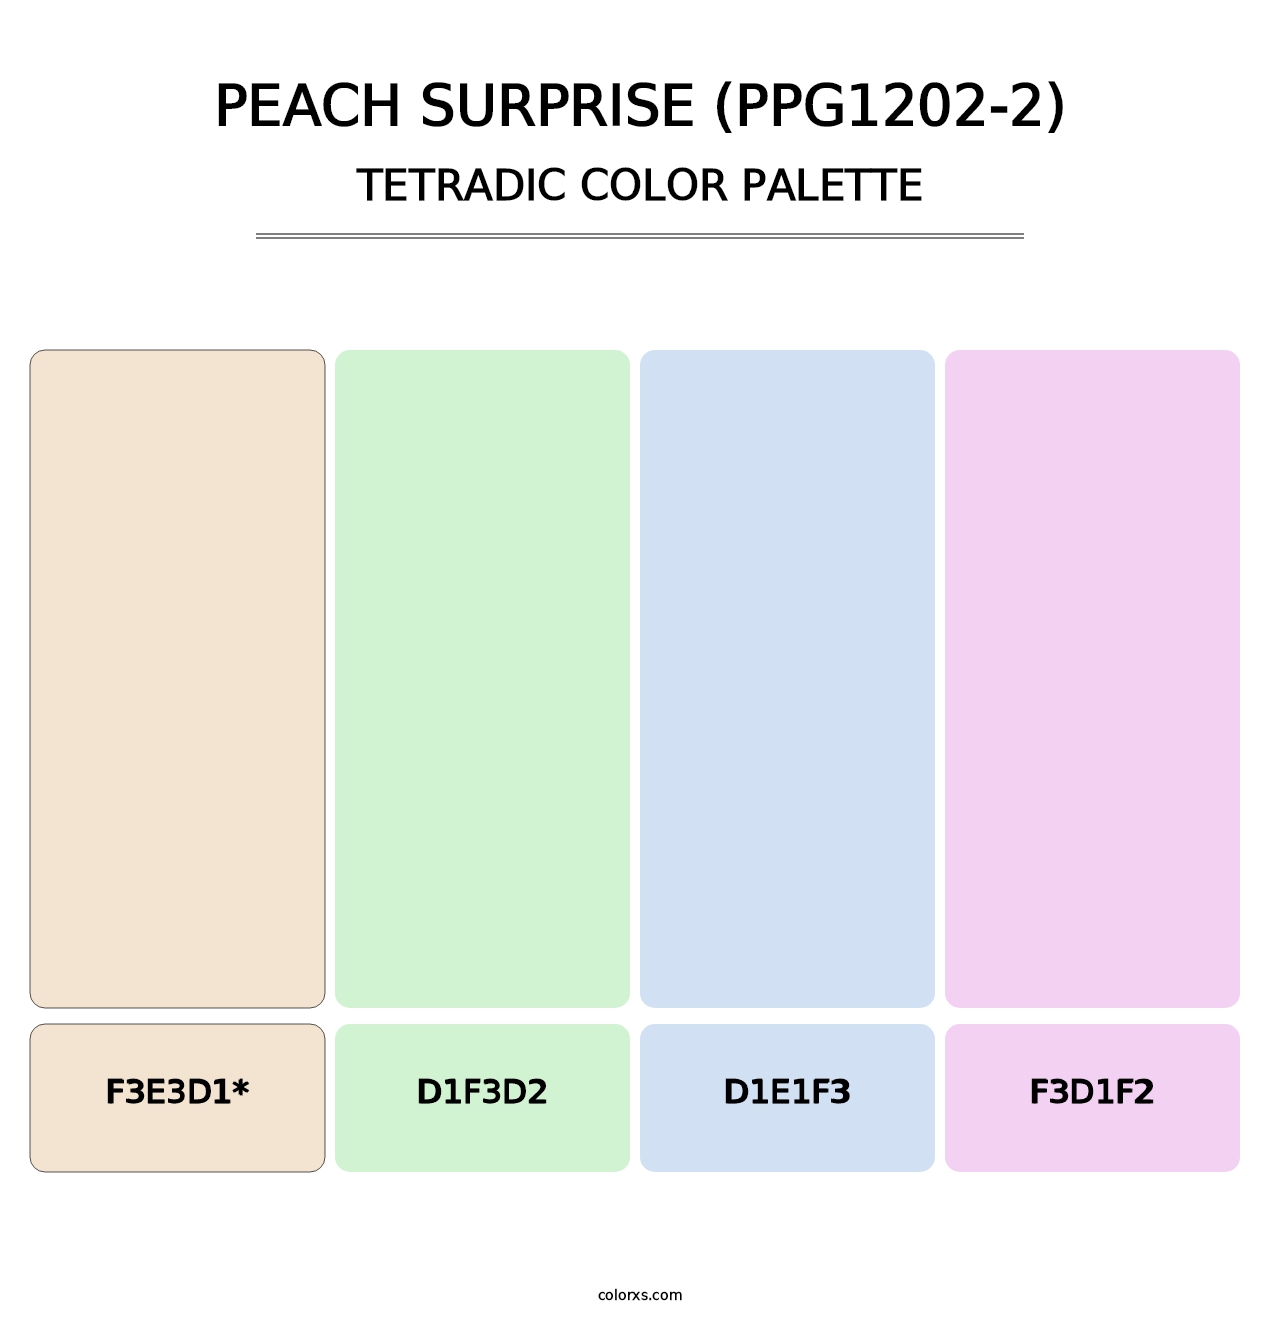 Peach Surprise (PPG1202-2) - Tetradic Color Palette